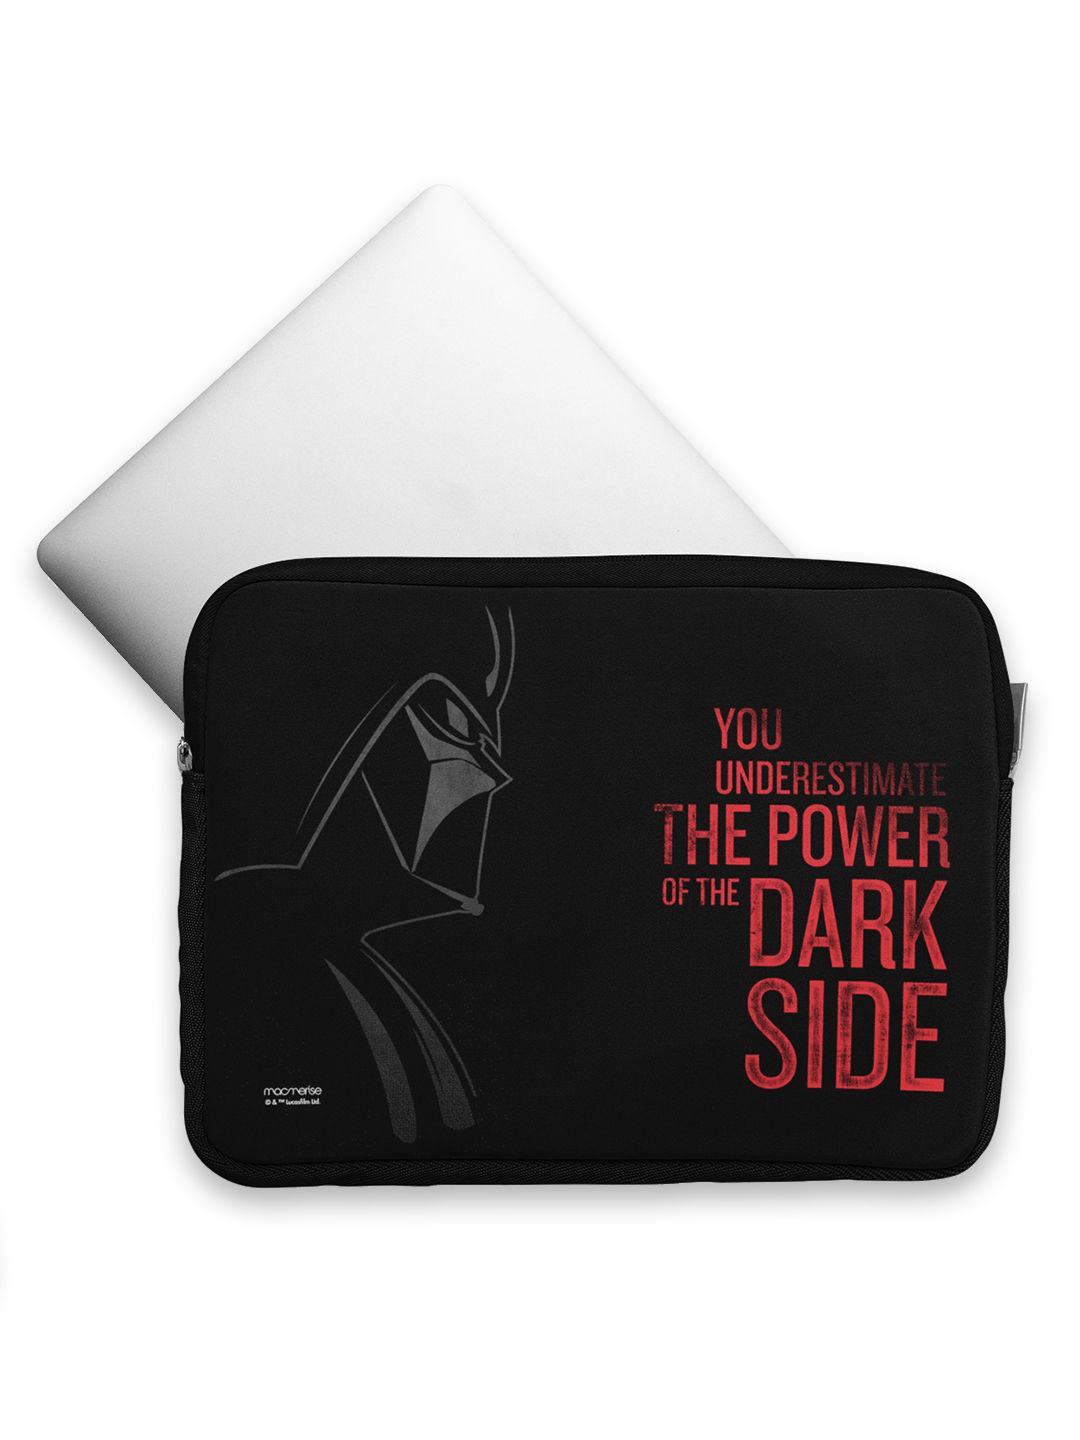 Buy The Dark Side - Printed Laptop Sleeves (13 inch) Laptop Covers Online